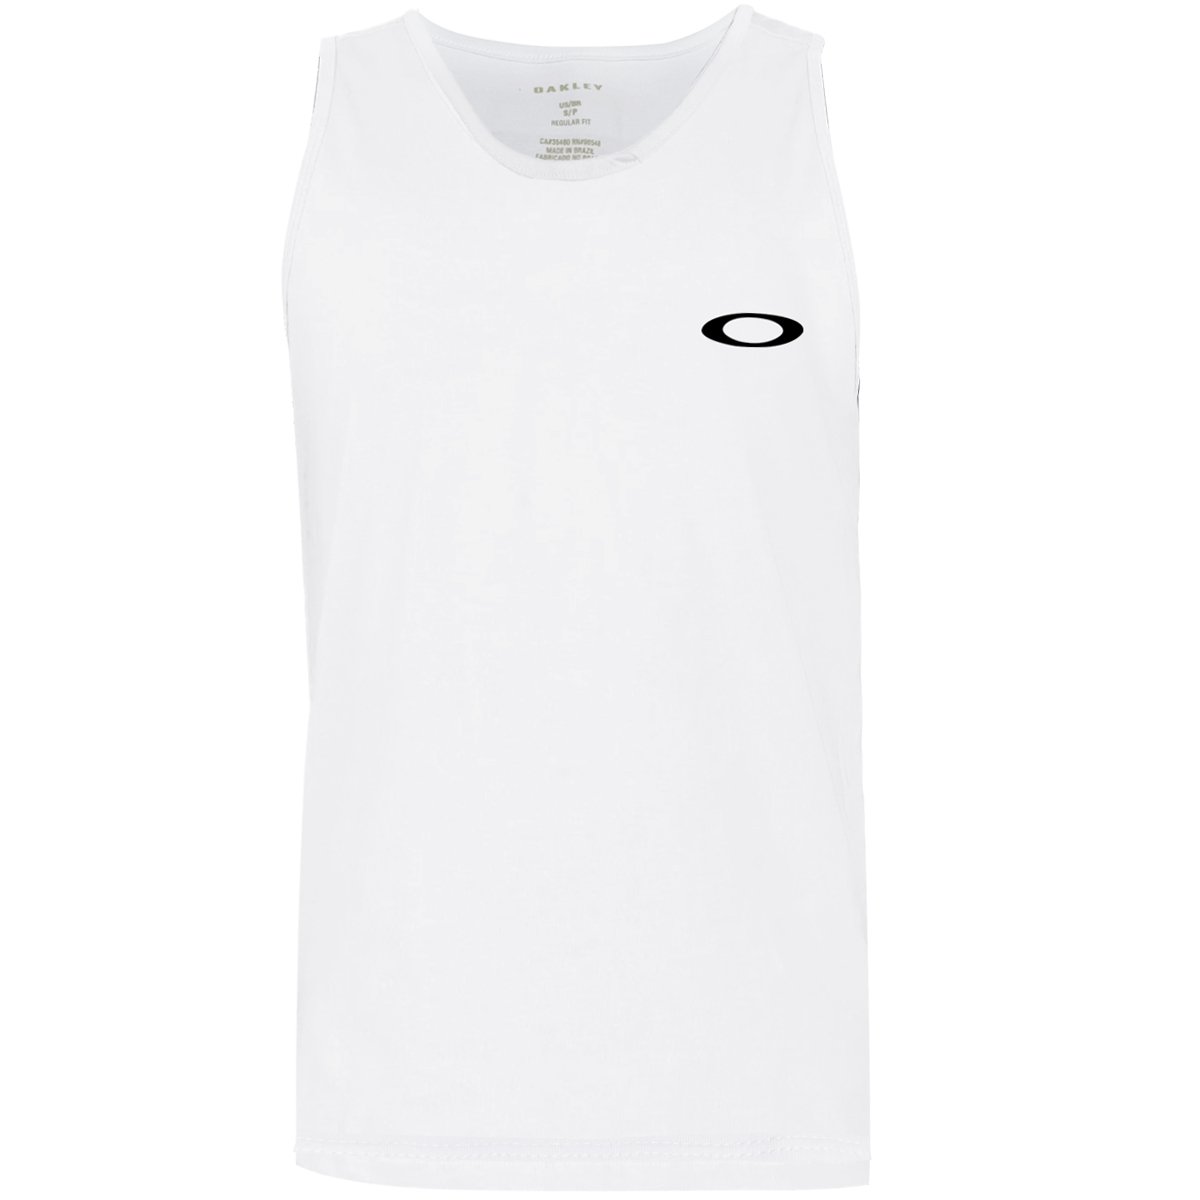 Camiseta Regata Oakley Feminina Oakley O-fresh Tank - Branco